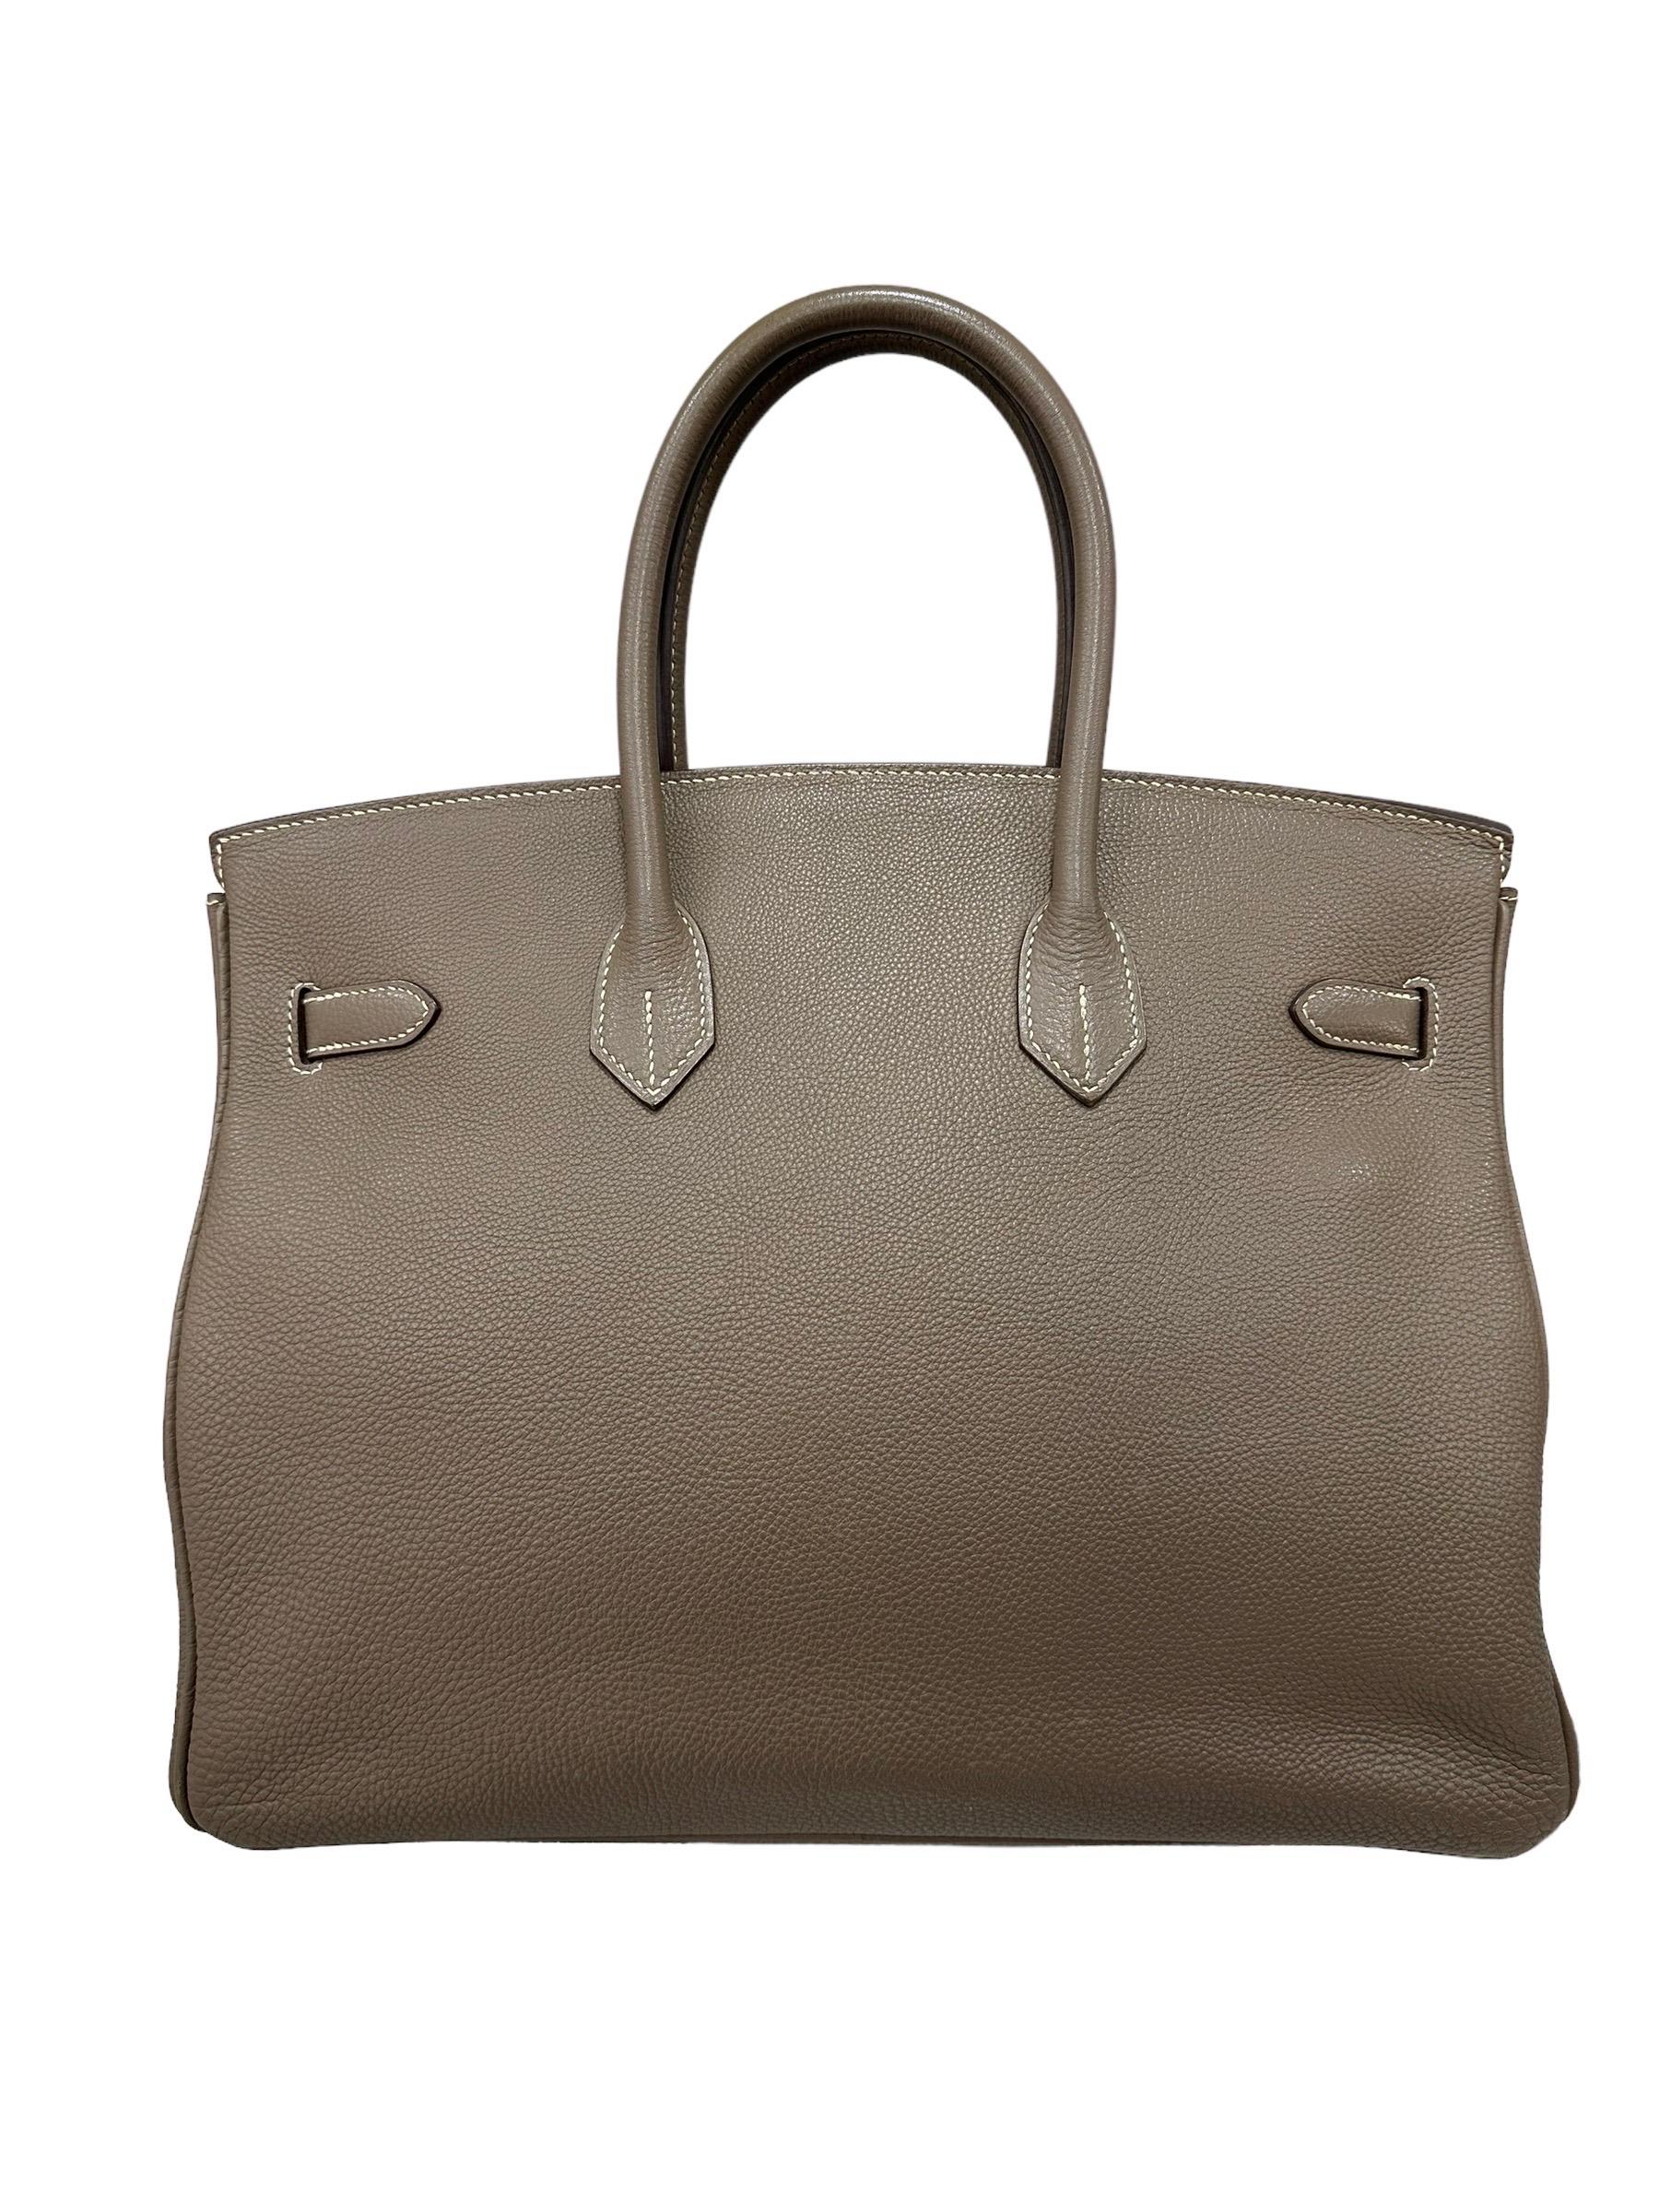 2008 Hermès Birkin 35 Togo Leather Toundra Top Handle Bag Pour femmes en vente